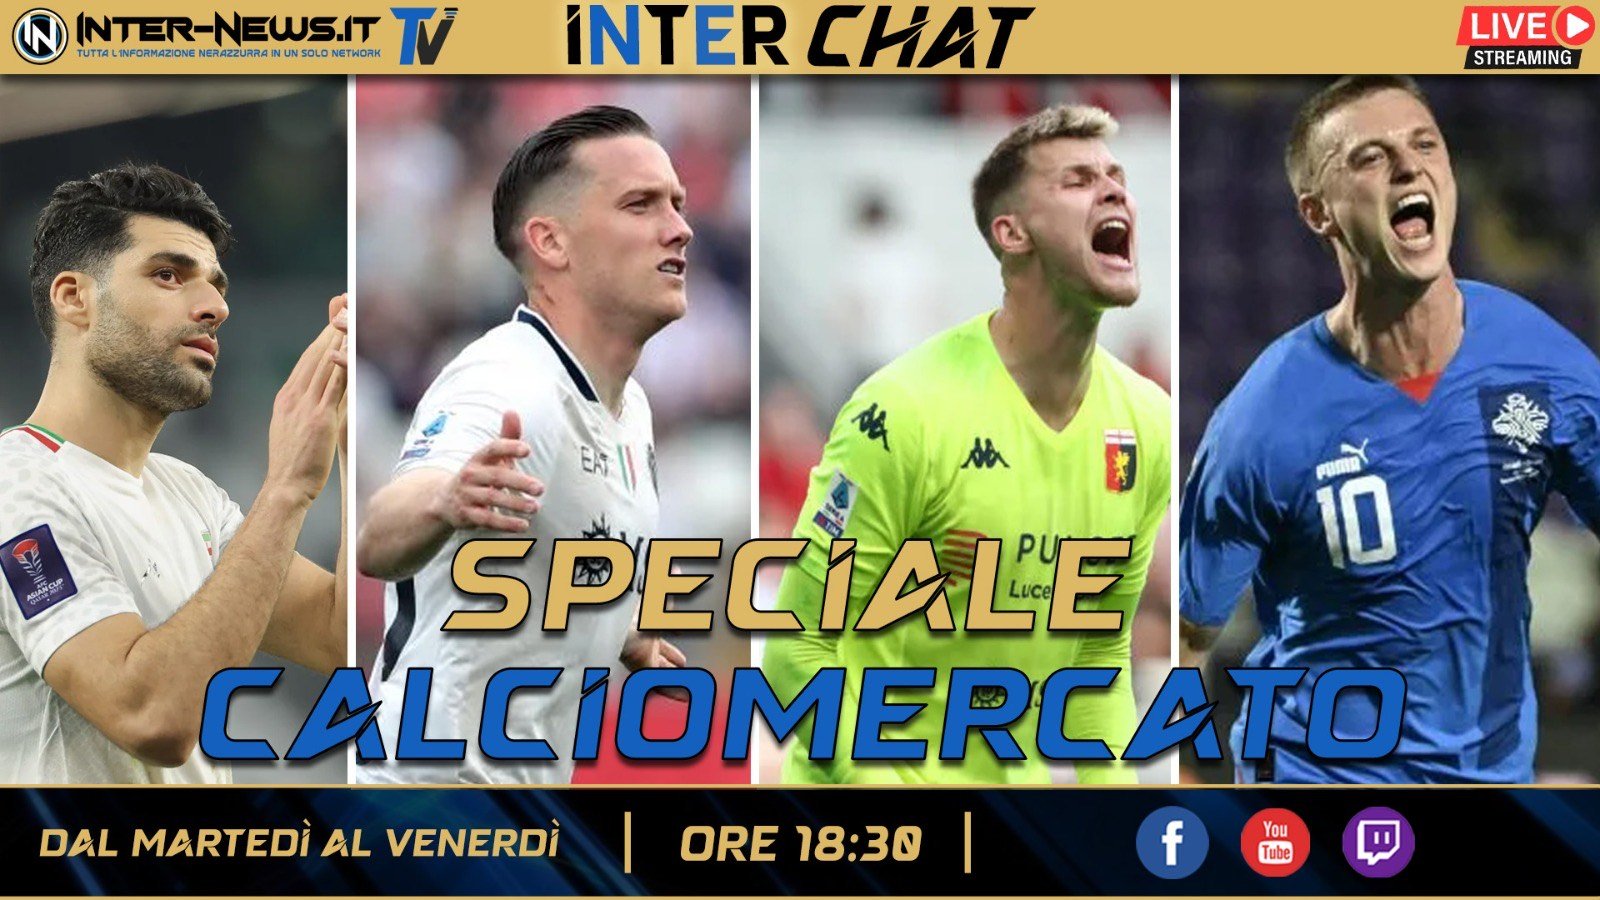 VIDEO – Speciale Calciomercato, si inizia! Vicino un arrivo | Inter Chat